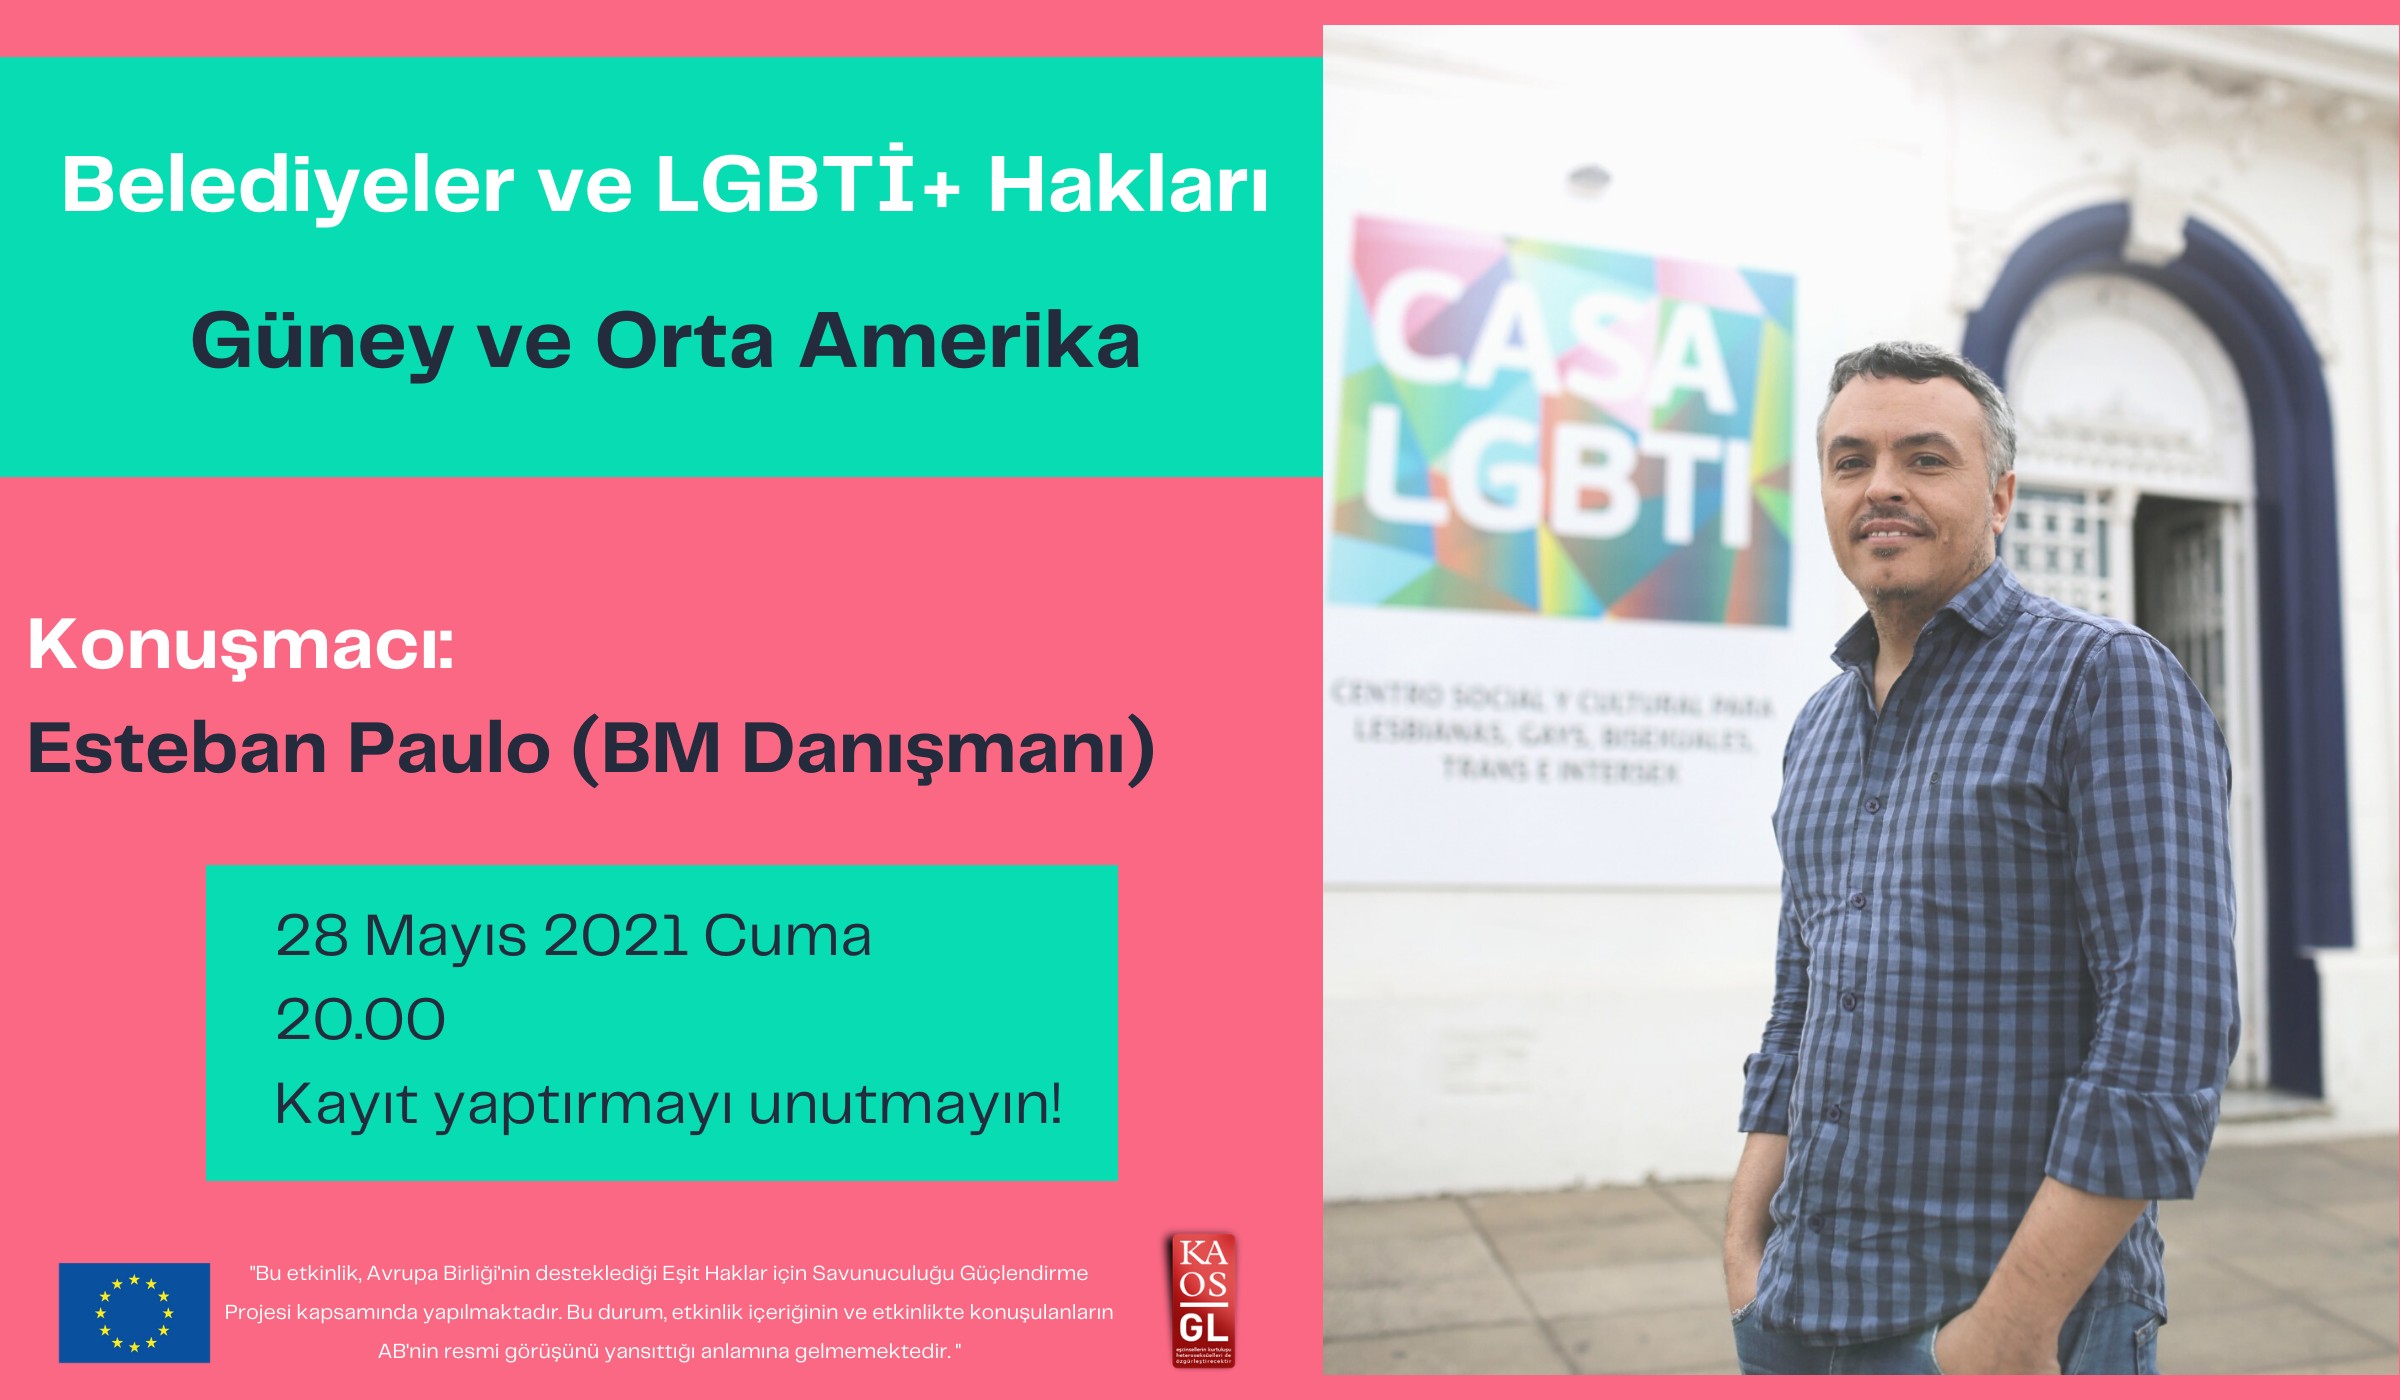 “Belediyeler ve LGBTİ+ Hakları: Güney ve Orta Amerika” söyleşisine davetlisiniz! | Kaos GL - LGBTİ+ Haber Portalı